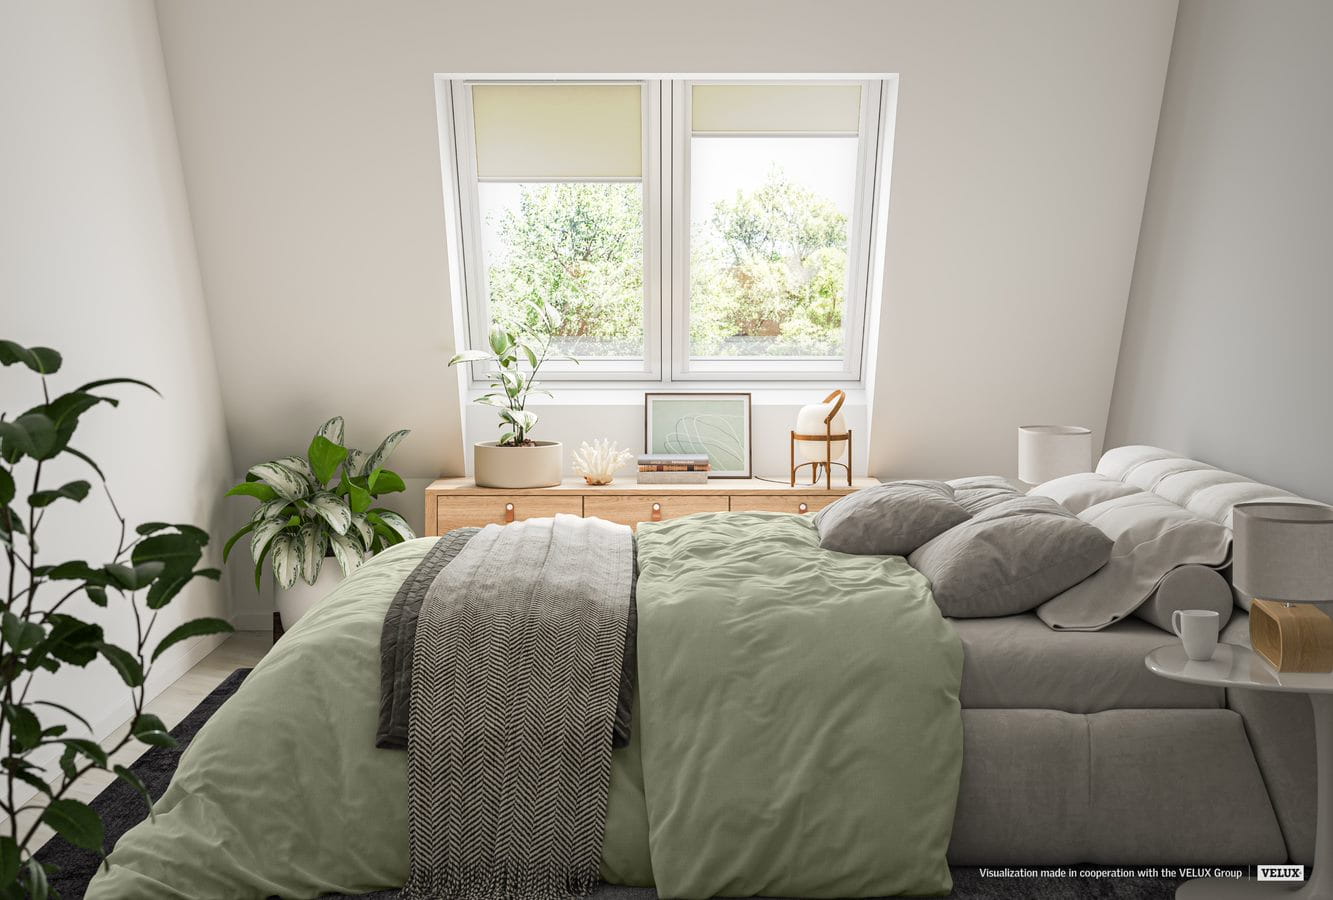 Gezellige slaapkamer met VELUX dakvenster, groen beddengoed, planten en minimalistische decoratie.